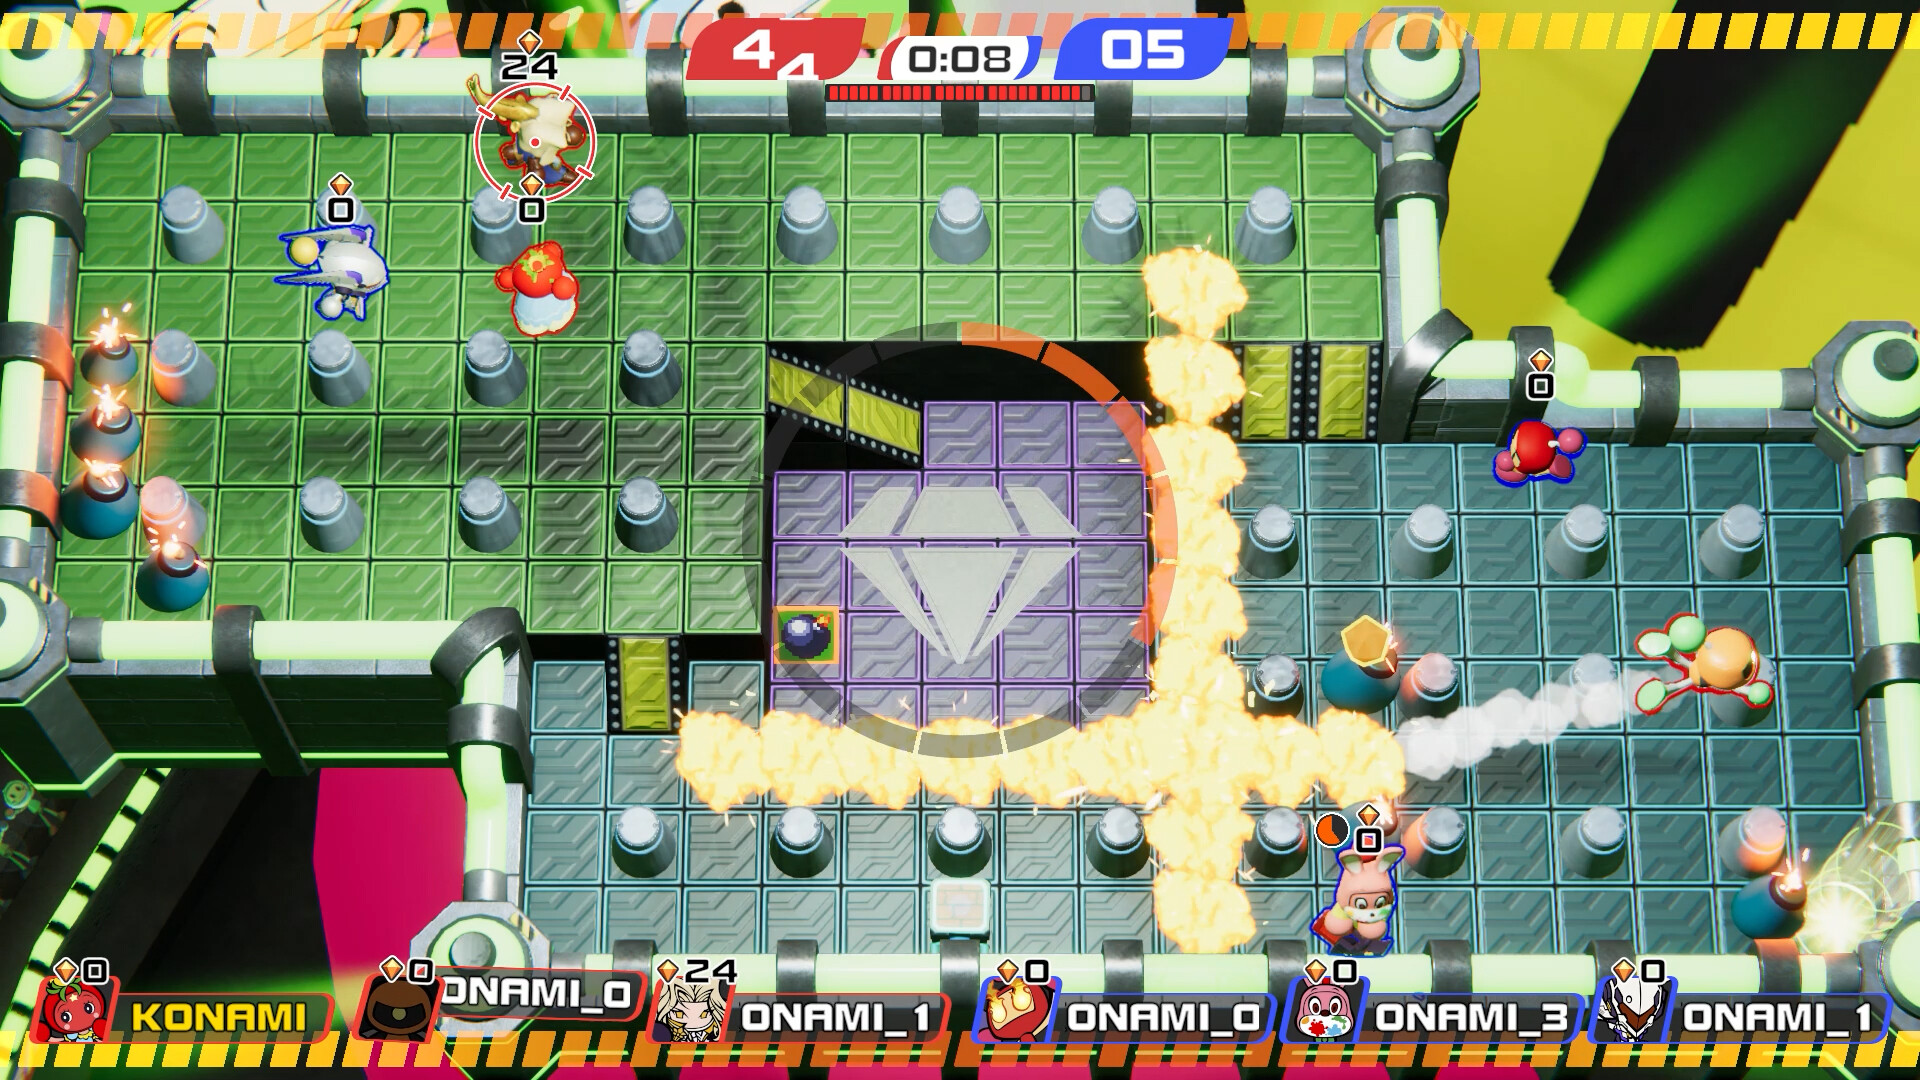 Gaming Relics - Super Bomberman 2